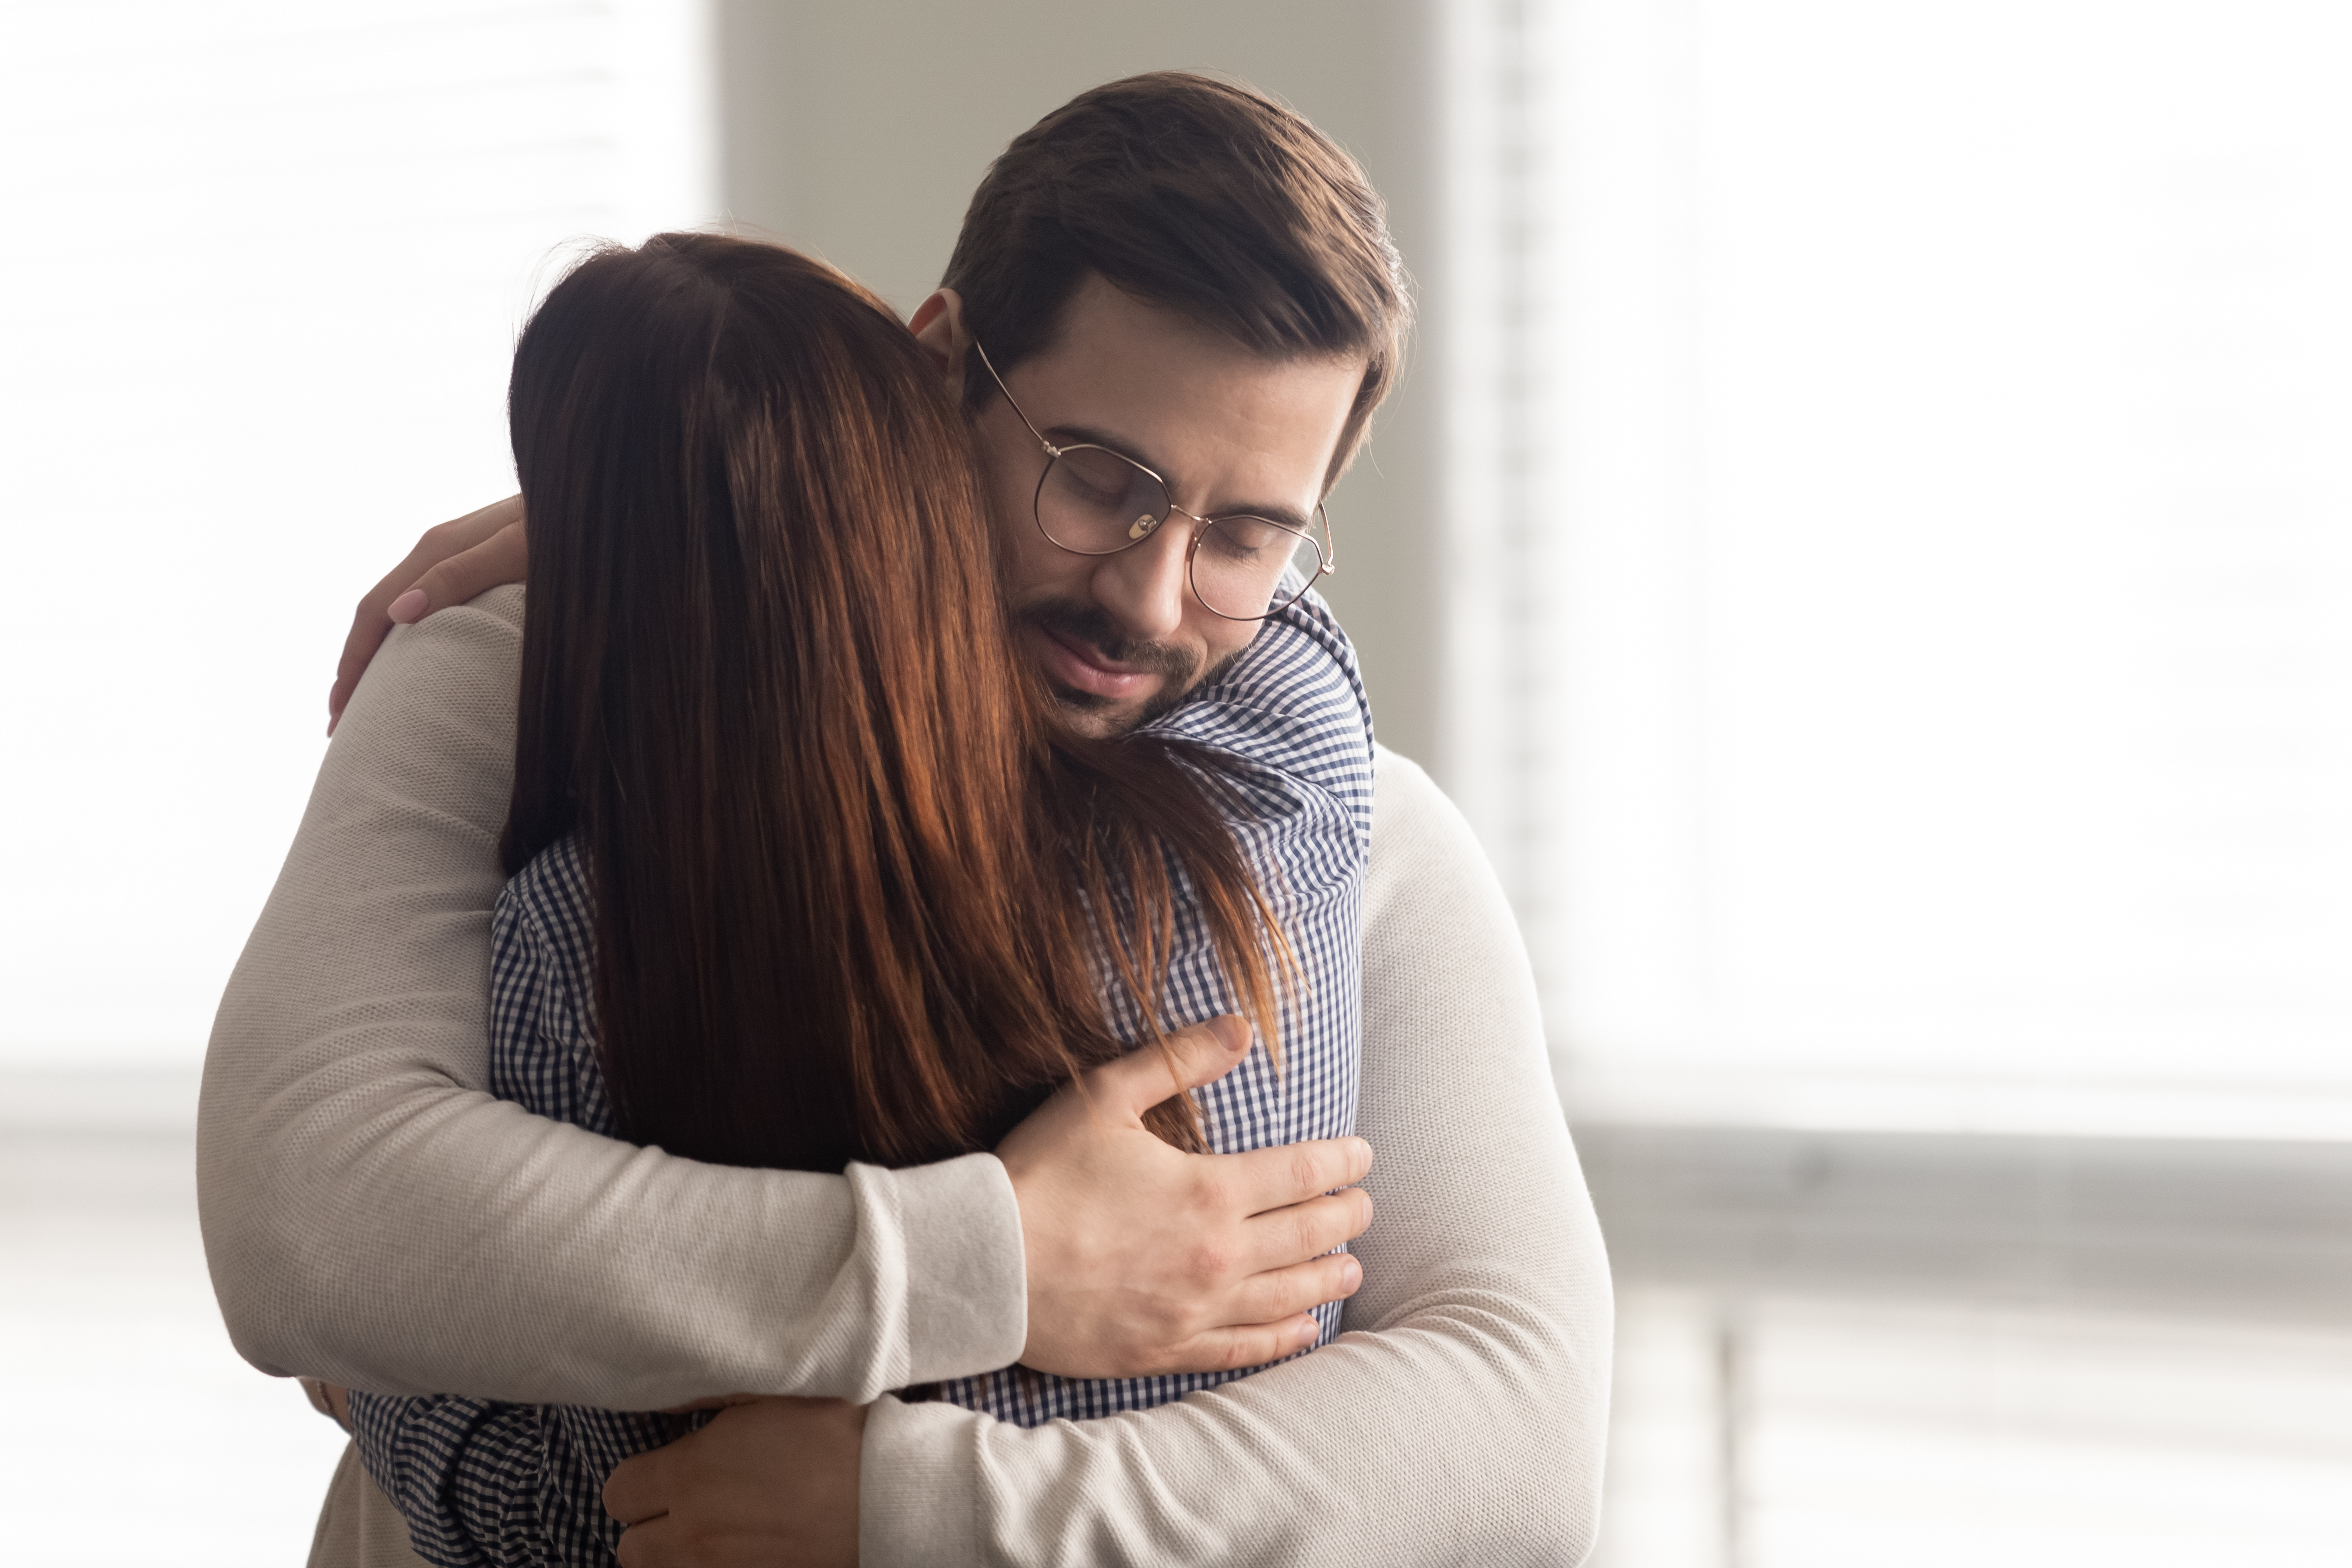 A man hugging a woman | Source: Shutterstock